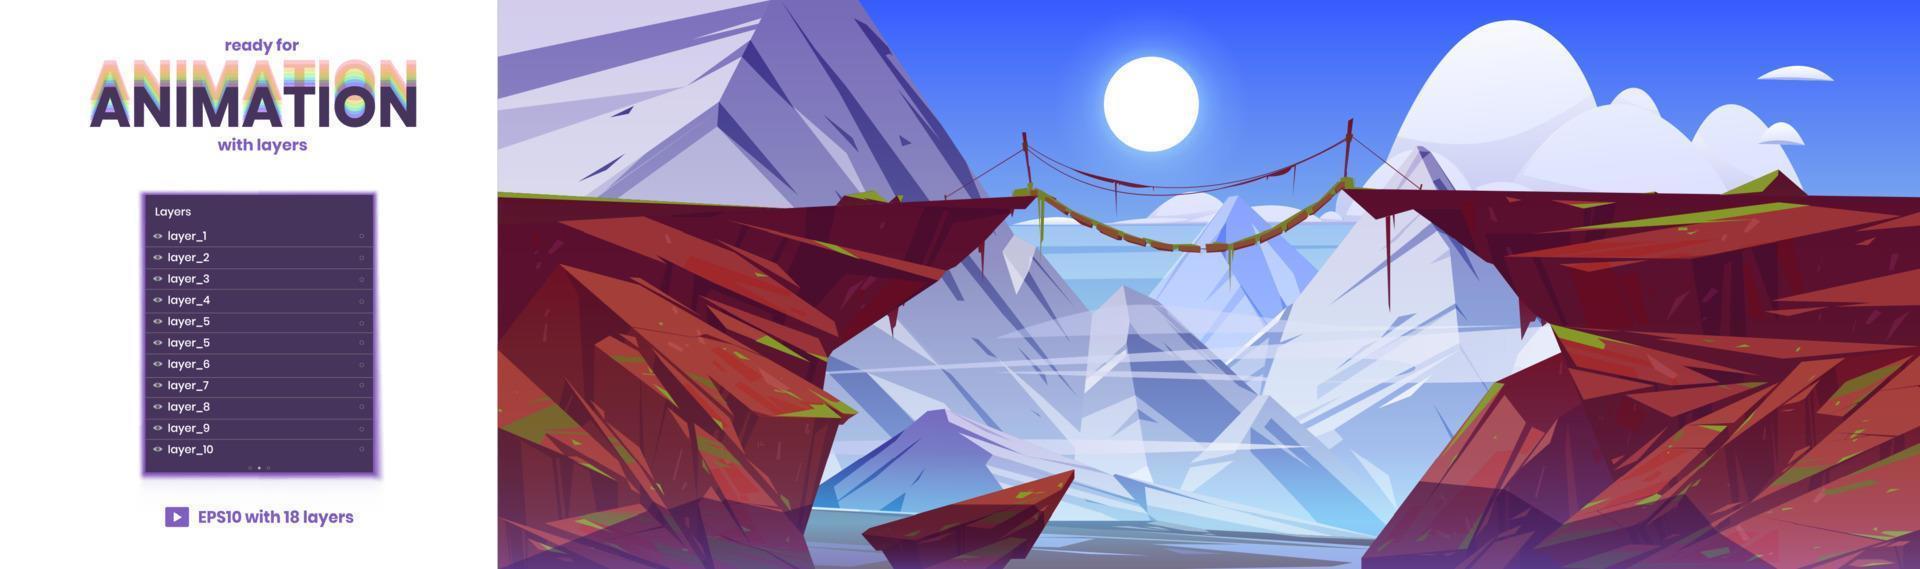 parallax achtergrond met touw brug in bergen vector